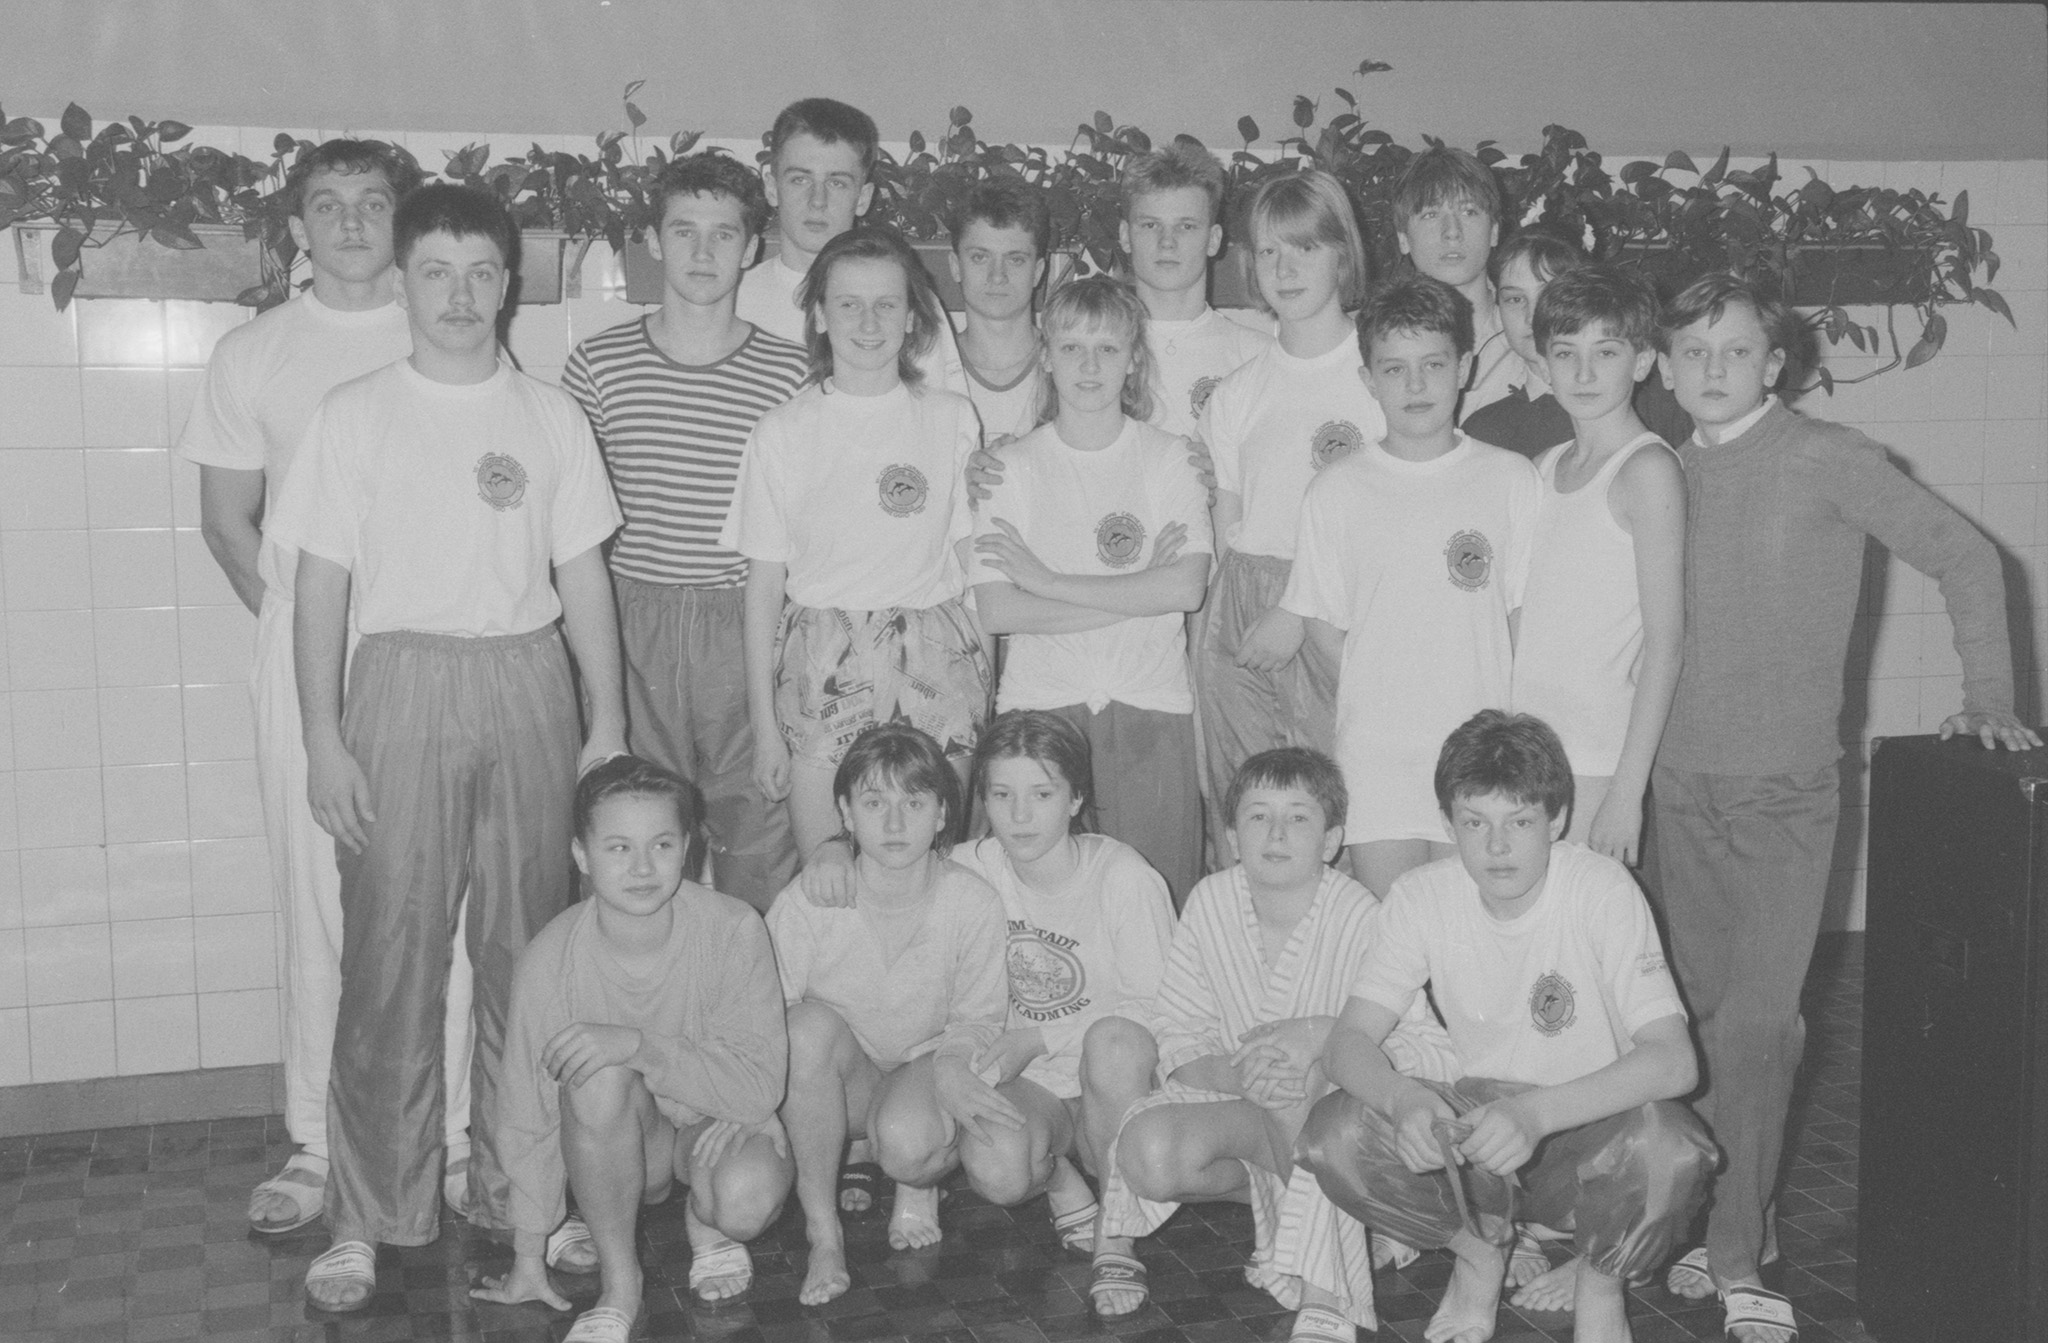 17.03.1989 Jastrzębie - Międzynarodowe Zawody Pływackie na pływalni kopalni Moszczenica zorganizoawne przez klub Nautilus